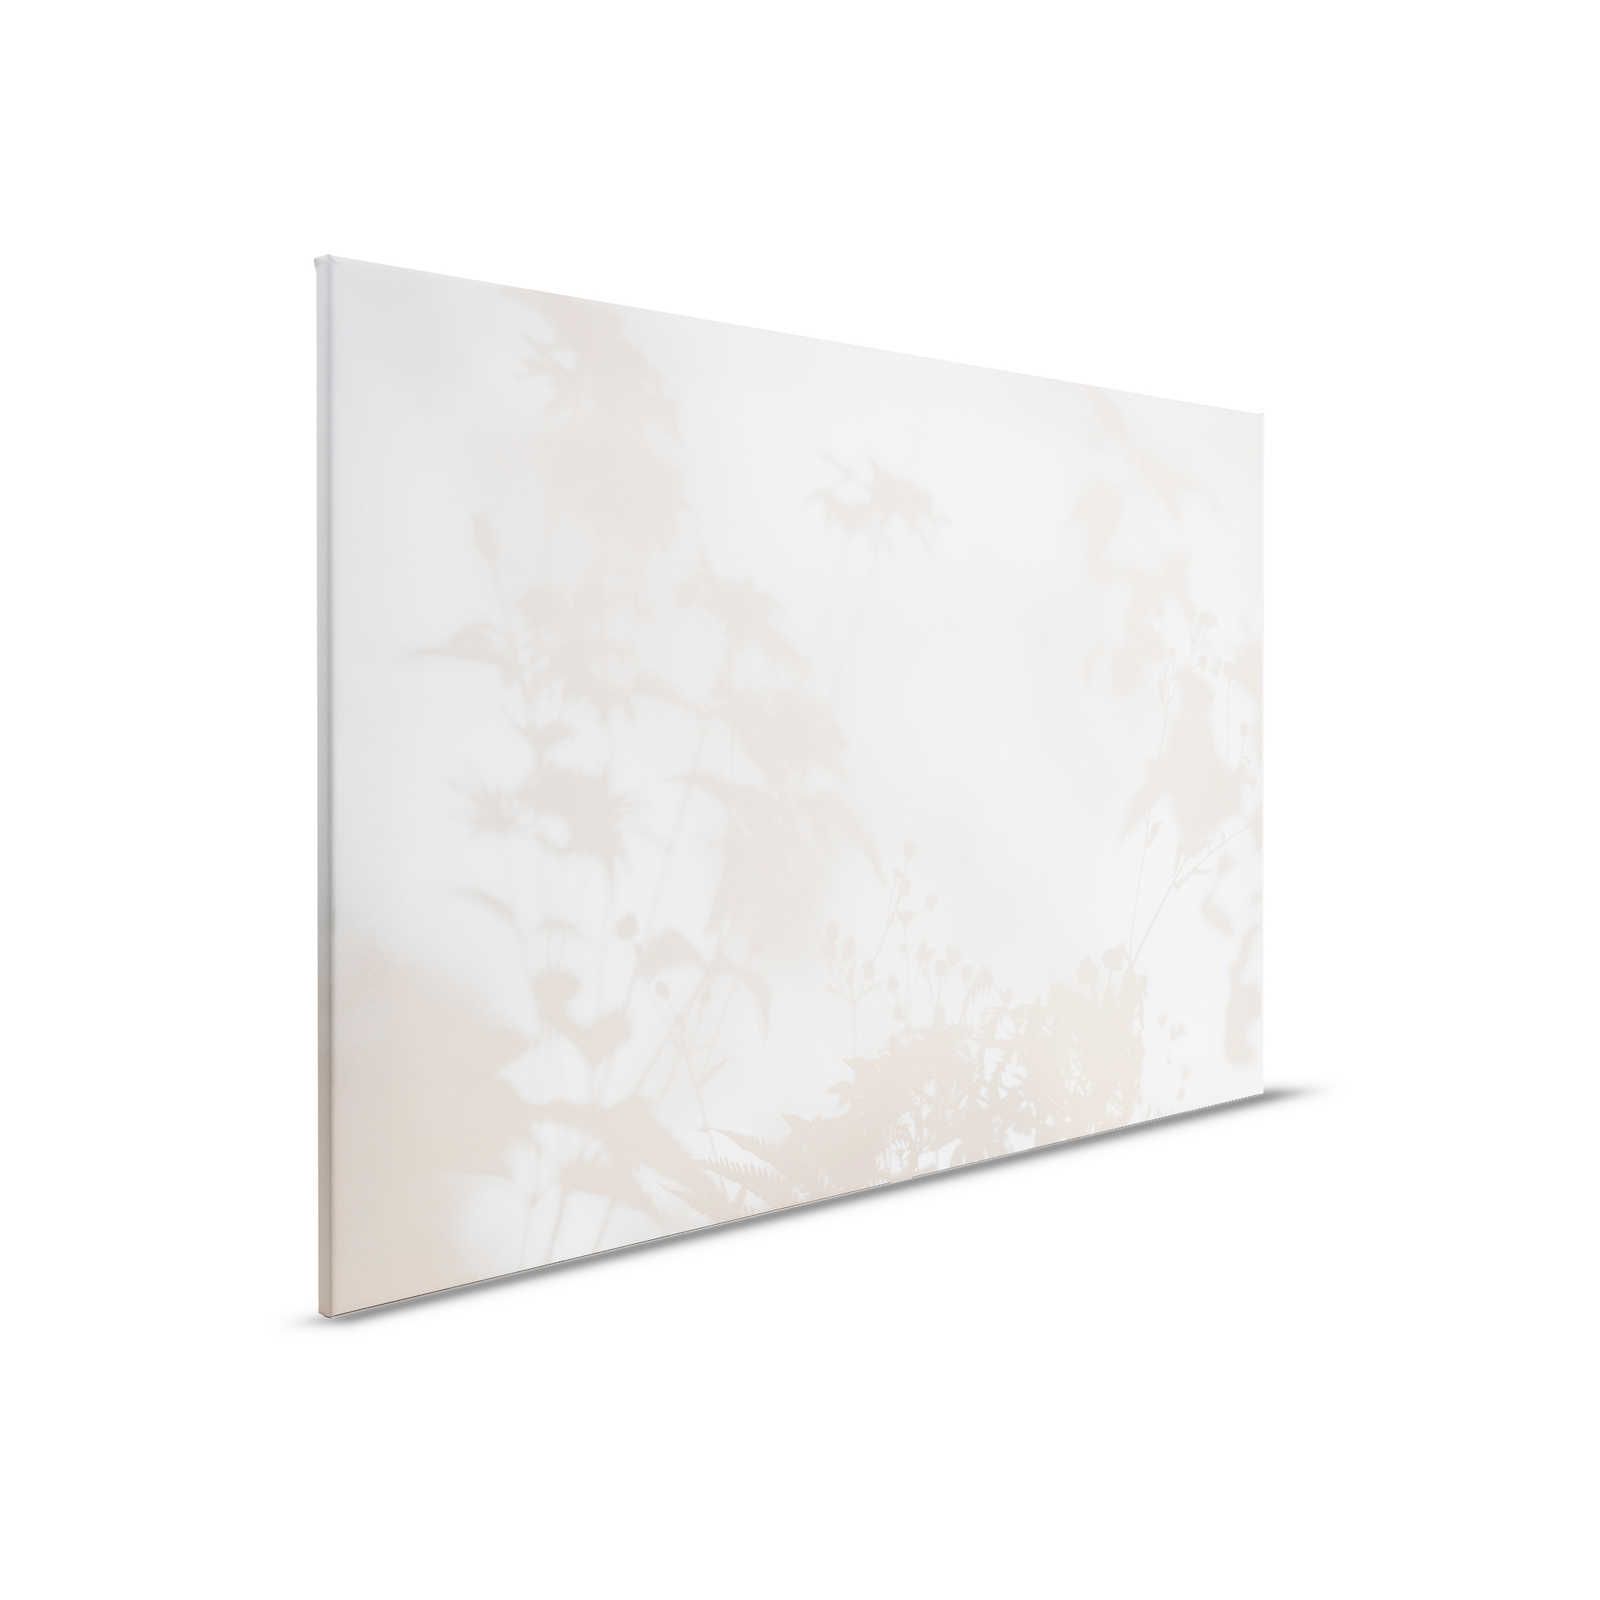 Camera d'ombra 1 - Tela naturale Beige e bianco, disegno sfumato - 0,90 m x 0,60 m
